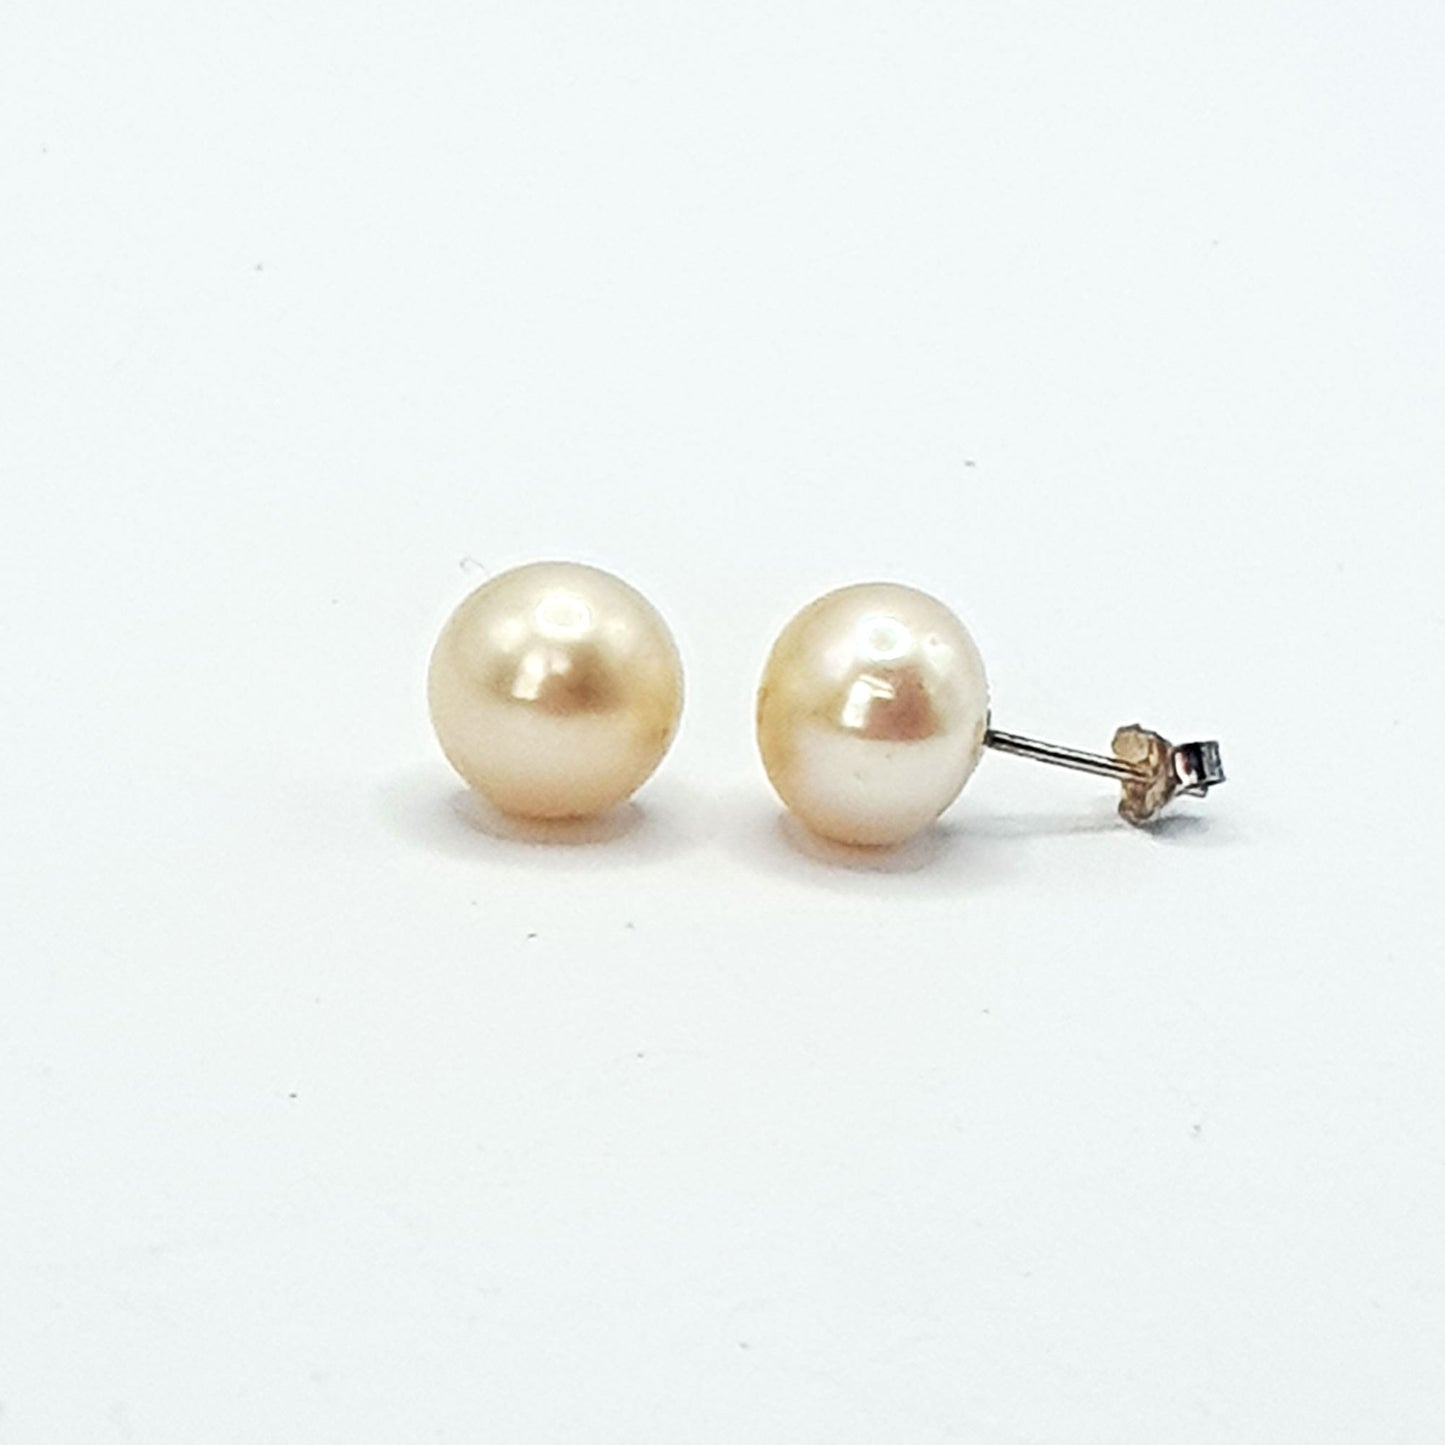 Peach freshwater pearl stud earrings